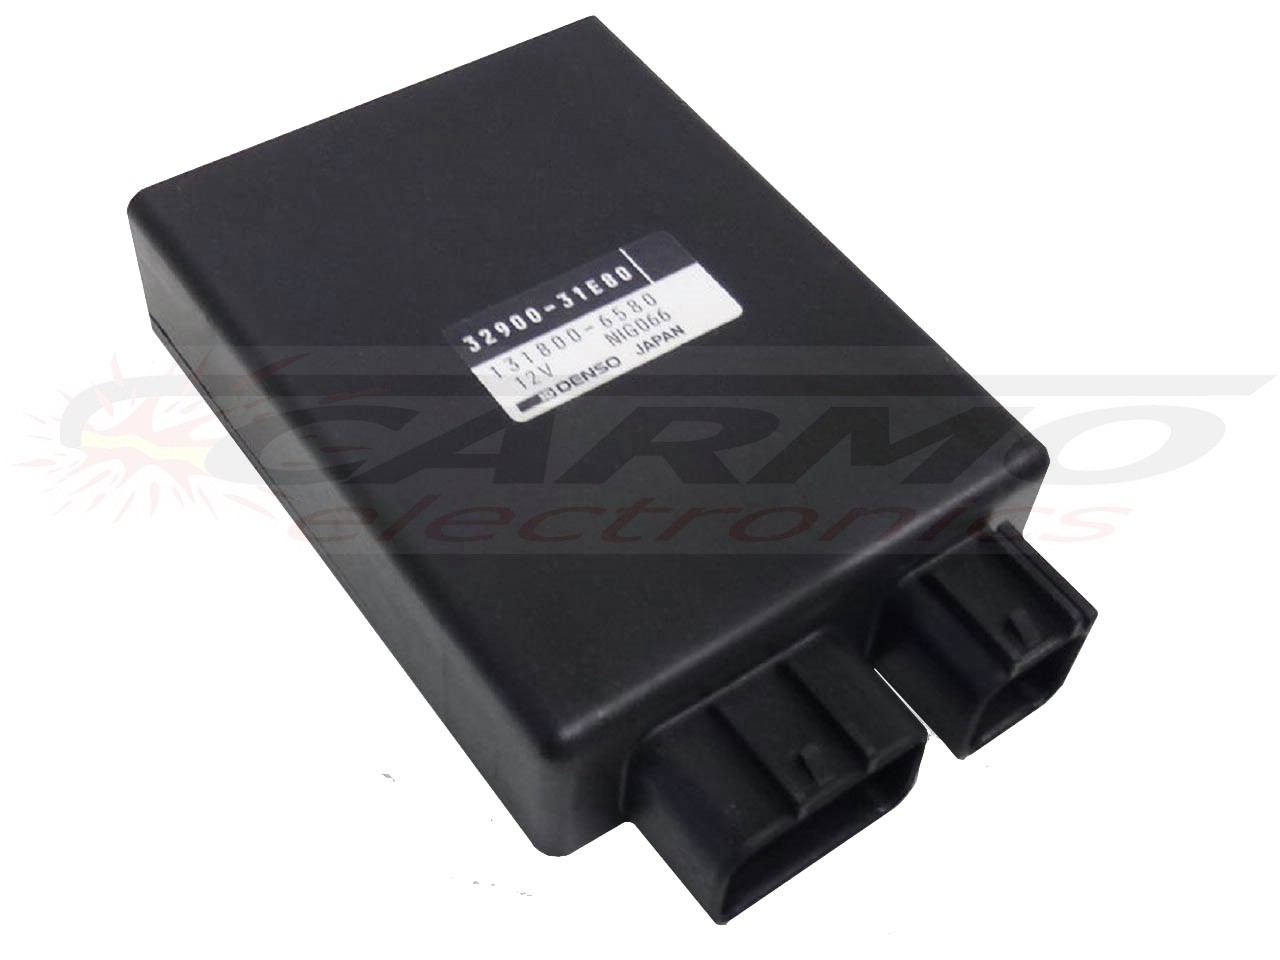 RF900 RF900R TCI CDI dispositif de commande boîte noire (32900-31E50, 32900-31E80)